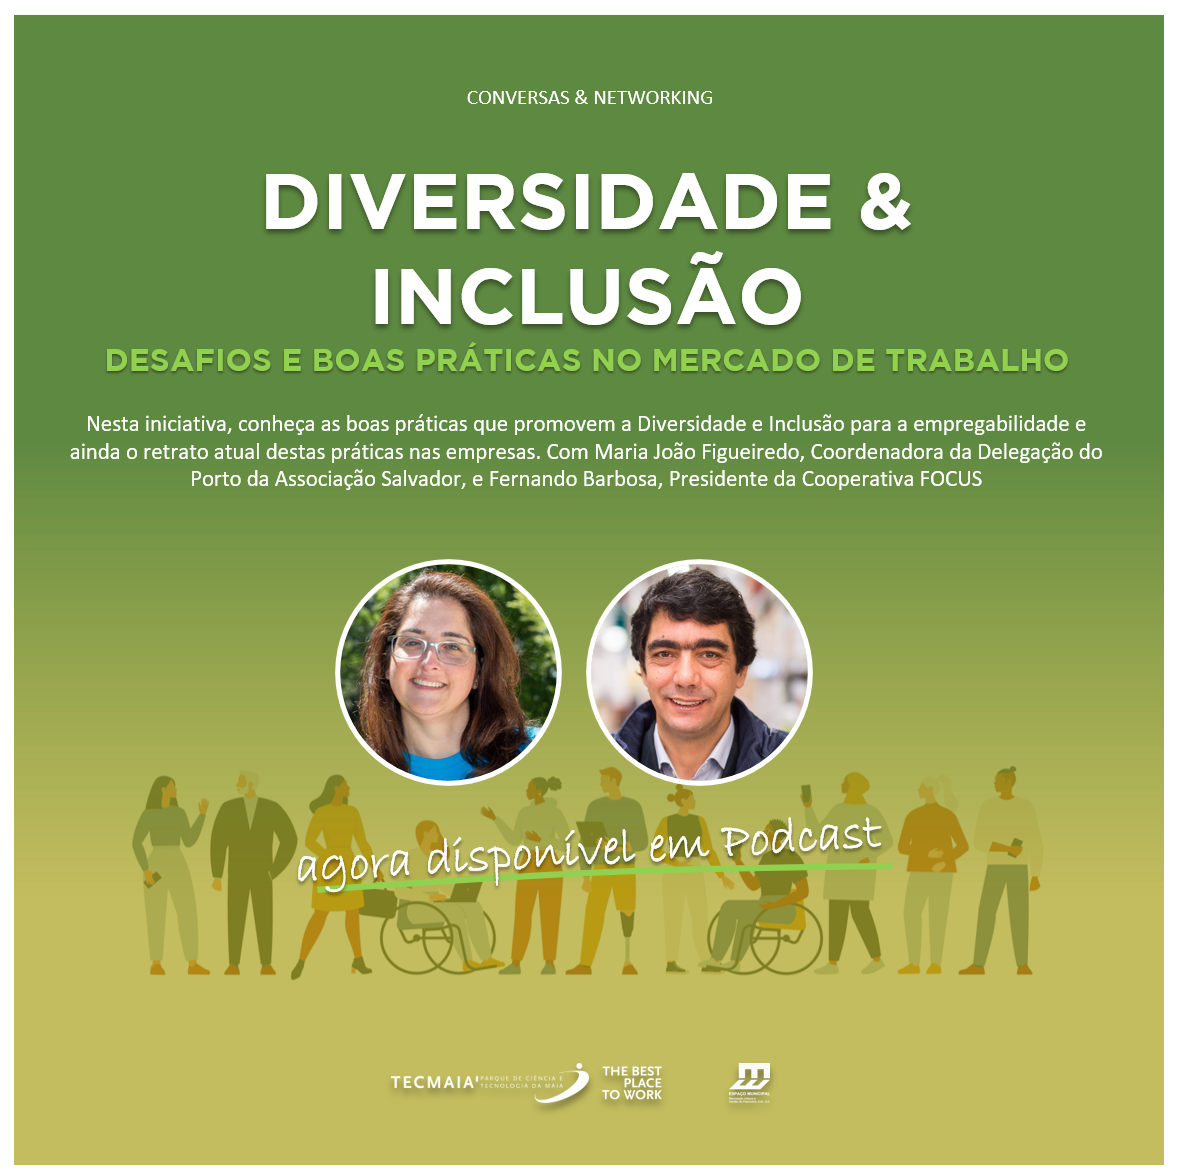 Webtalk "Diversidade & Inclusão - Desafios e Boas Práticas no Mercado de Trabalho"